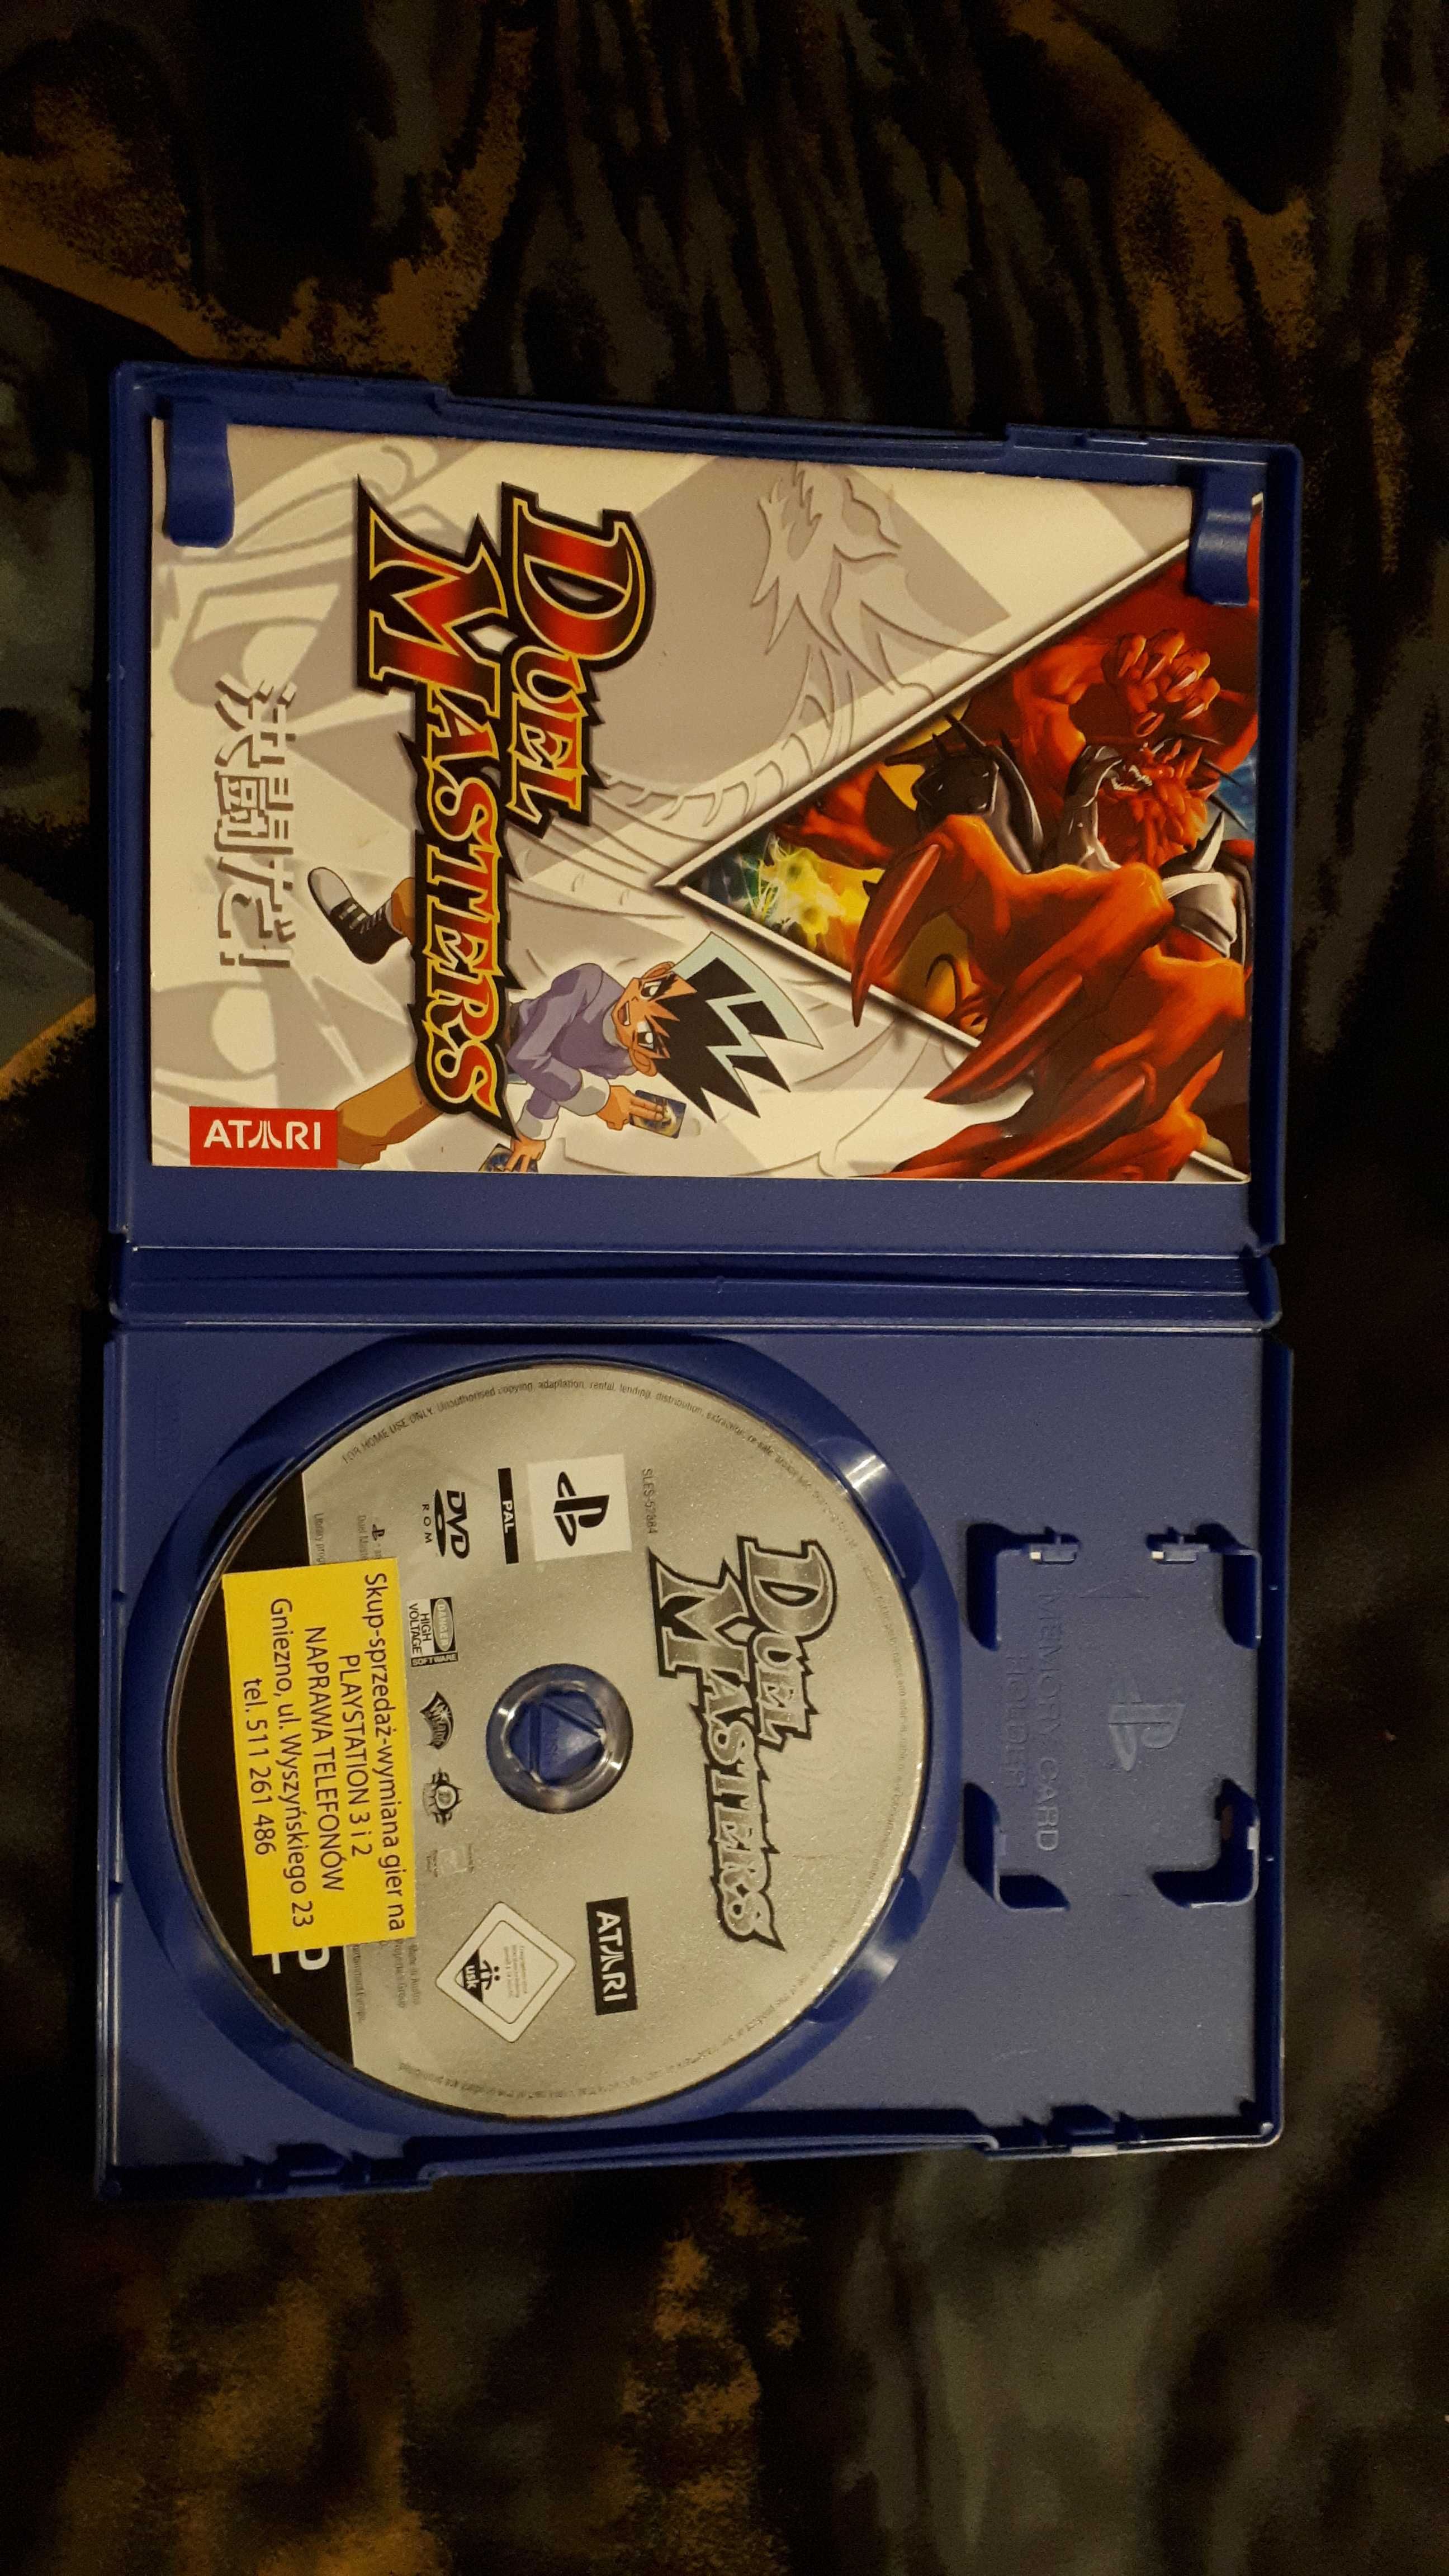 Duel Masters limitowana edycja PlayStation 2